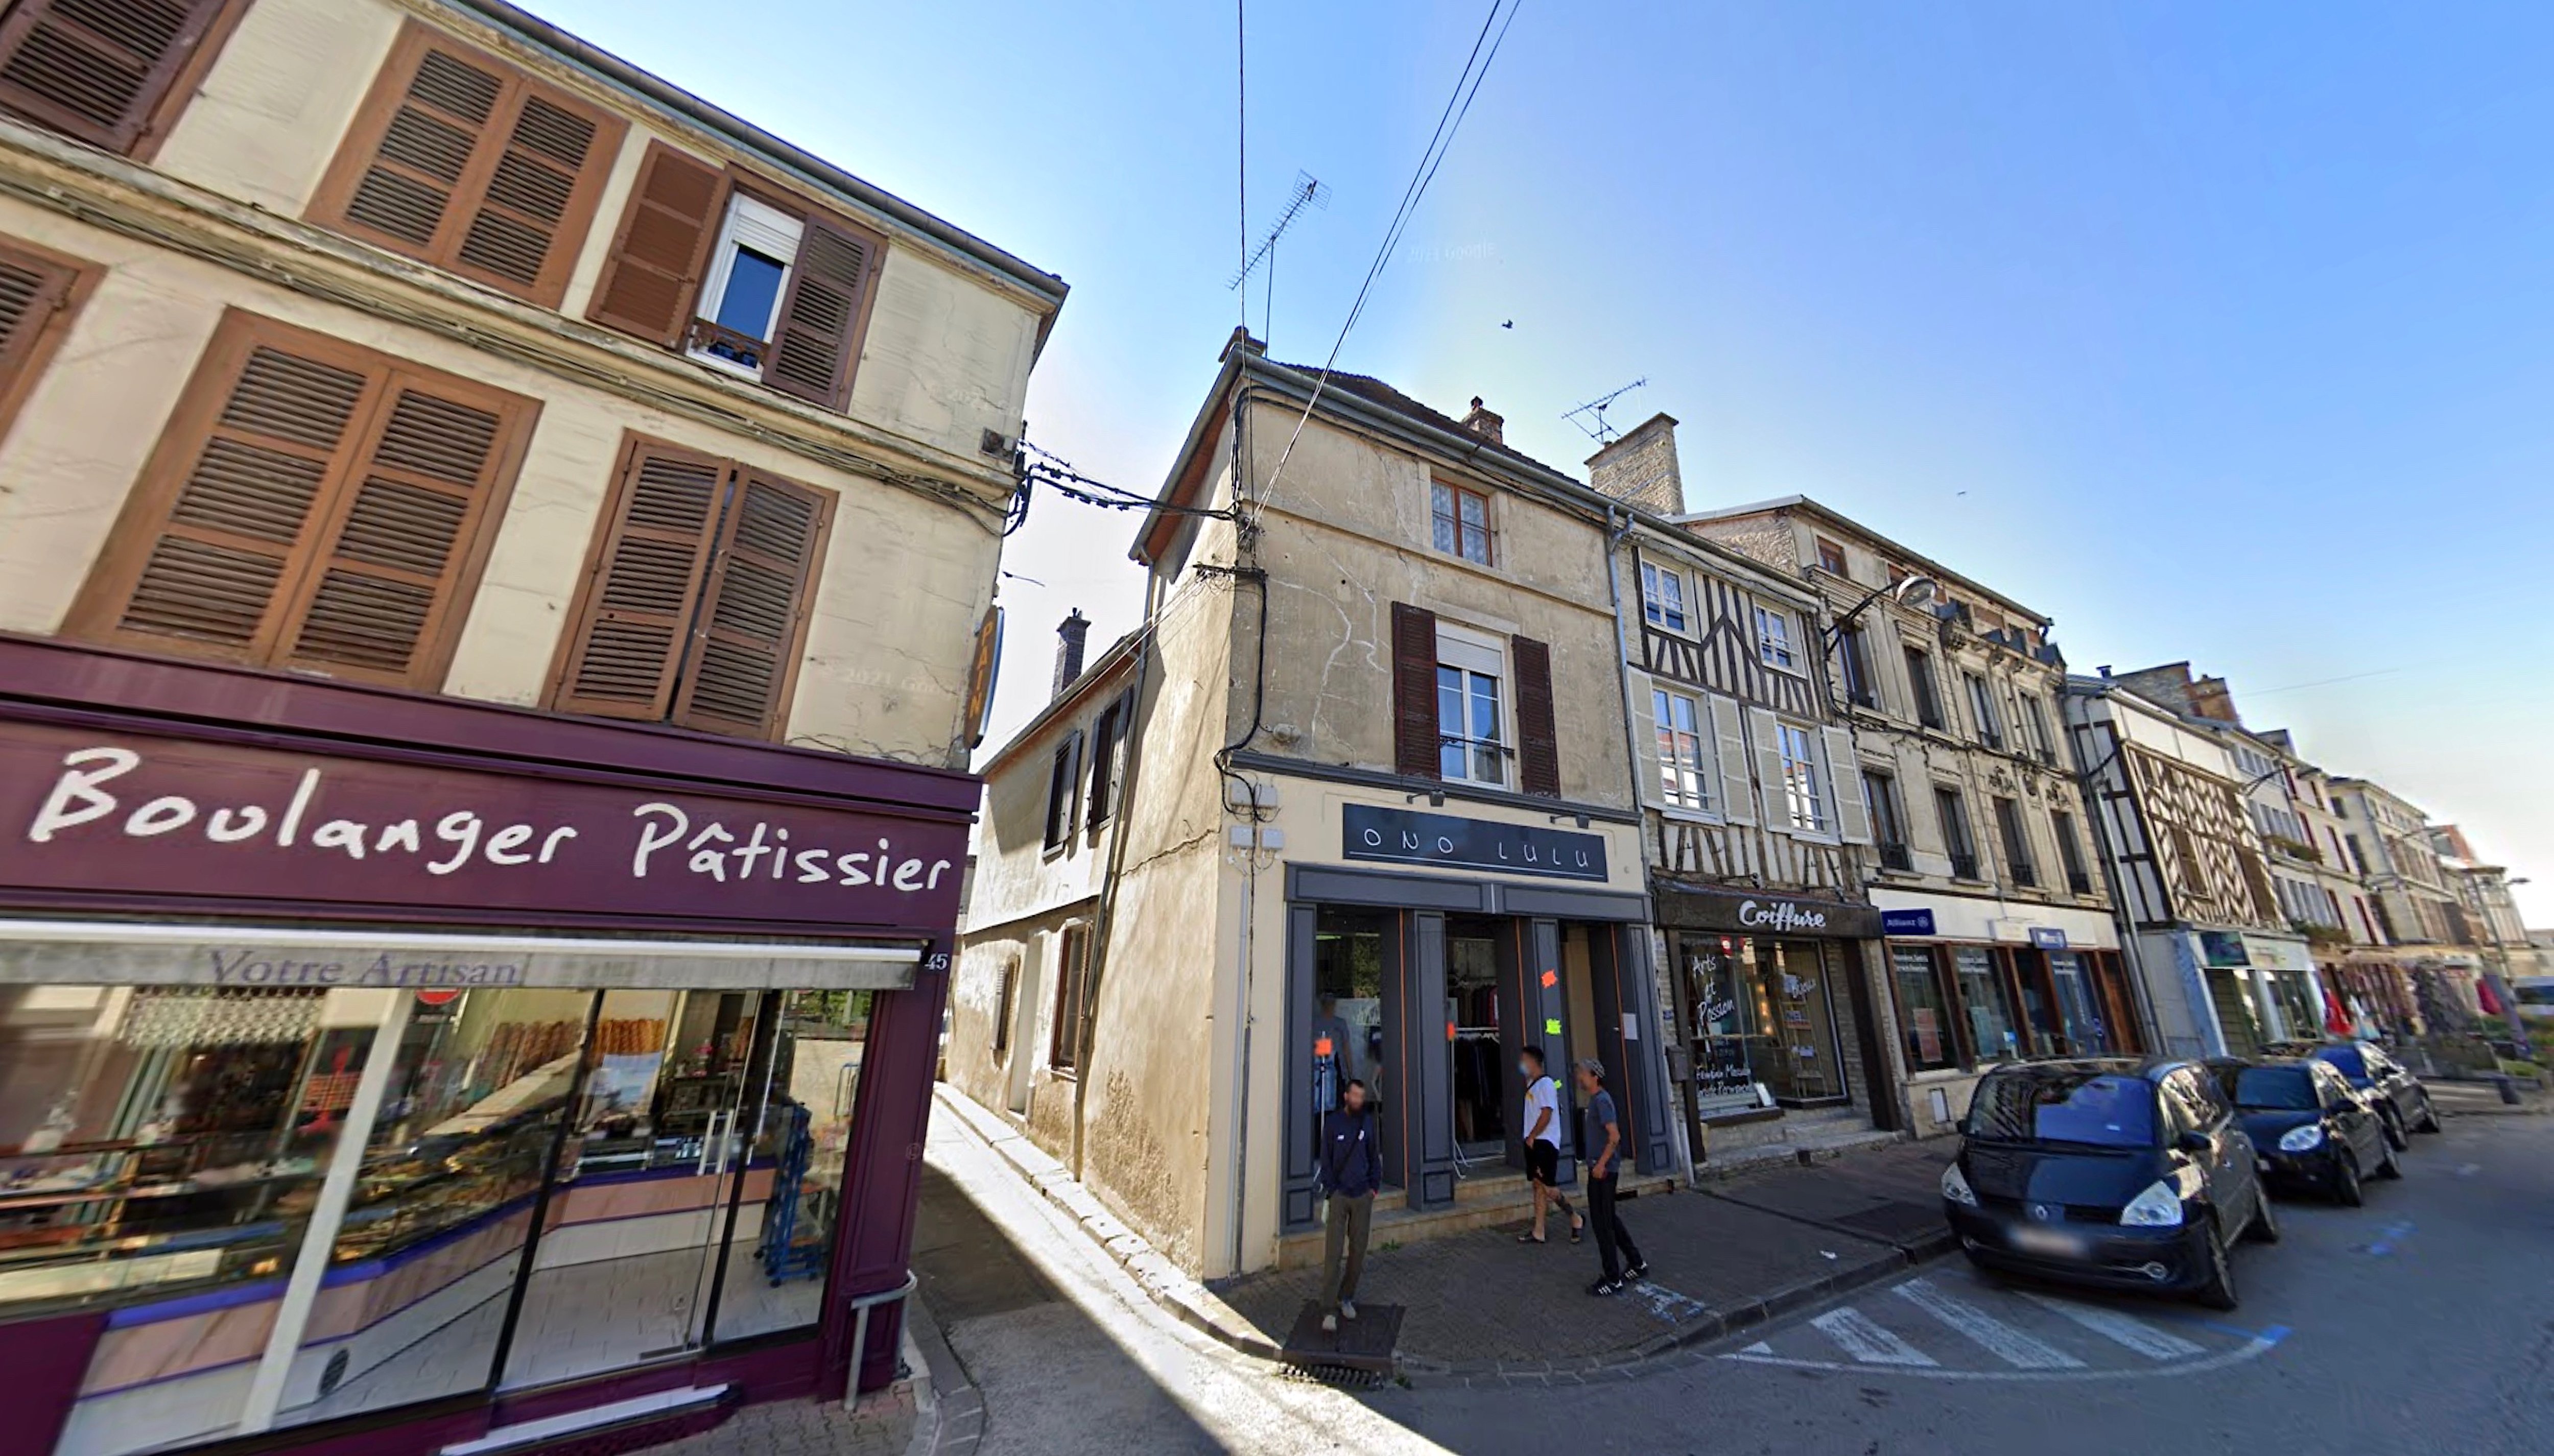 À Bar-sur-Aube, environ 150 logements sont vacants. La mairie, via une nouvelle taxe, espère convaincre les propriétaires de les remettre sur le marché de la location pour dynamiser le centre-ville. Capture d’écran Google Street View